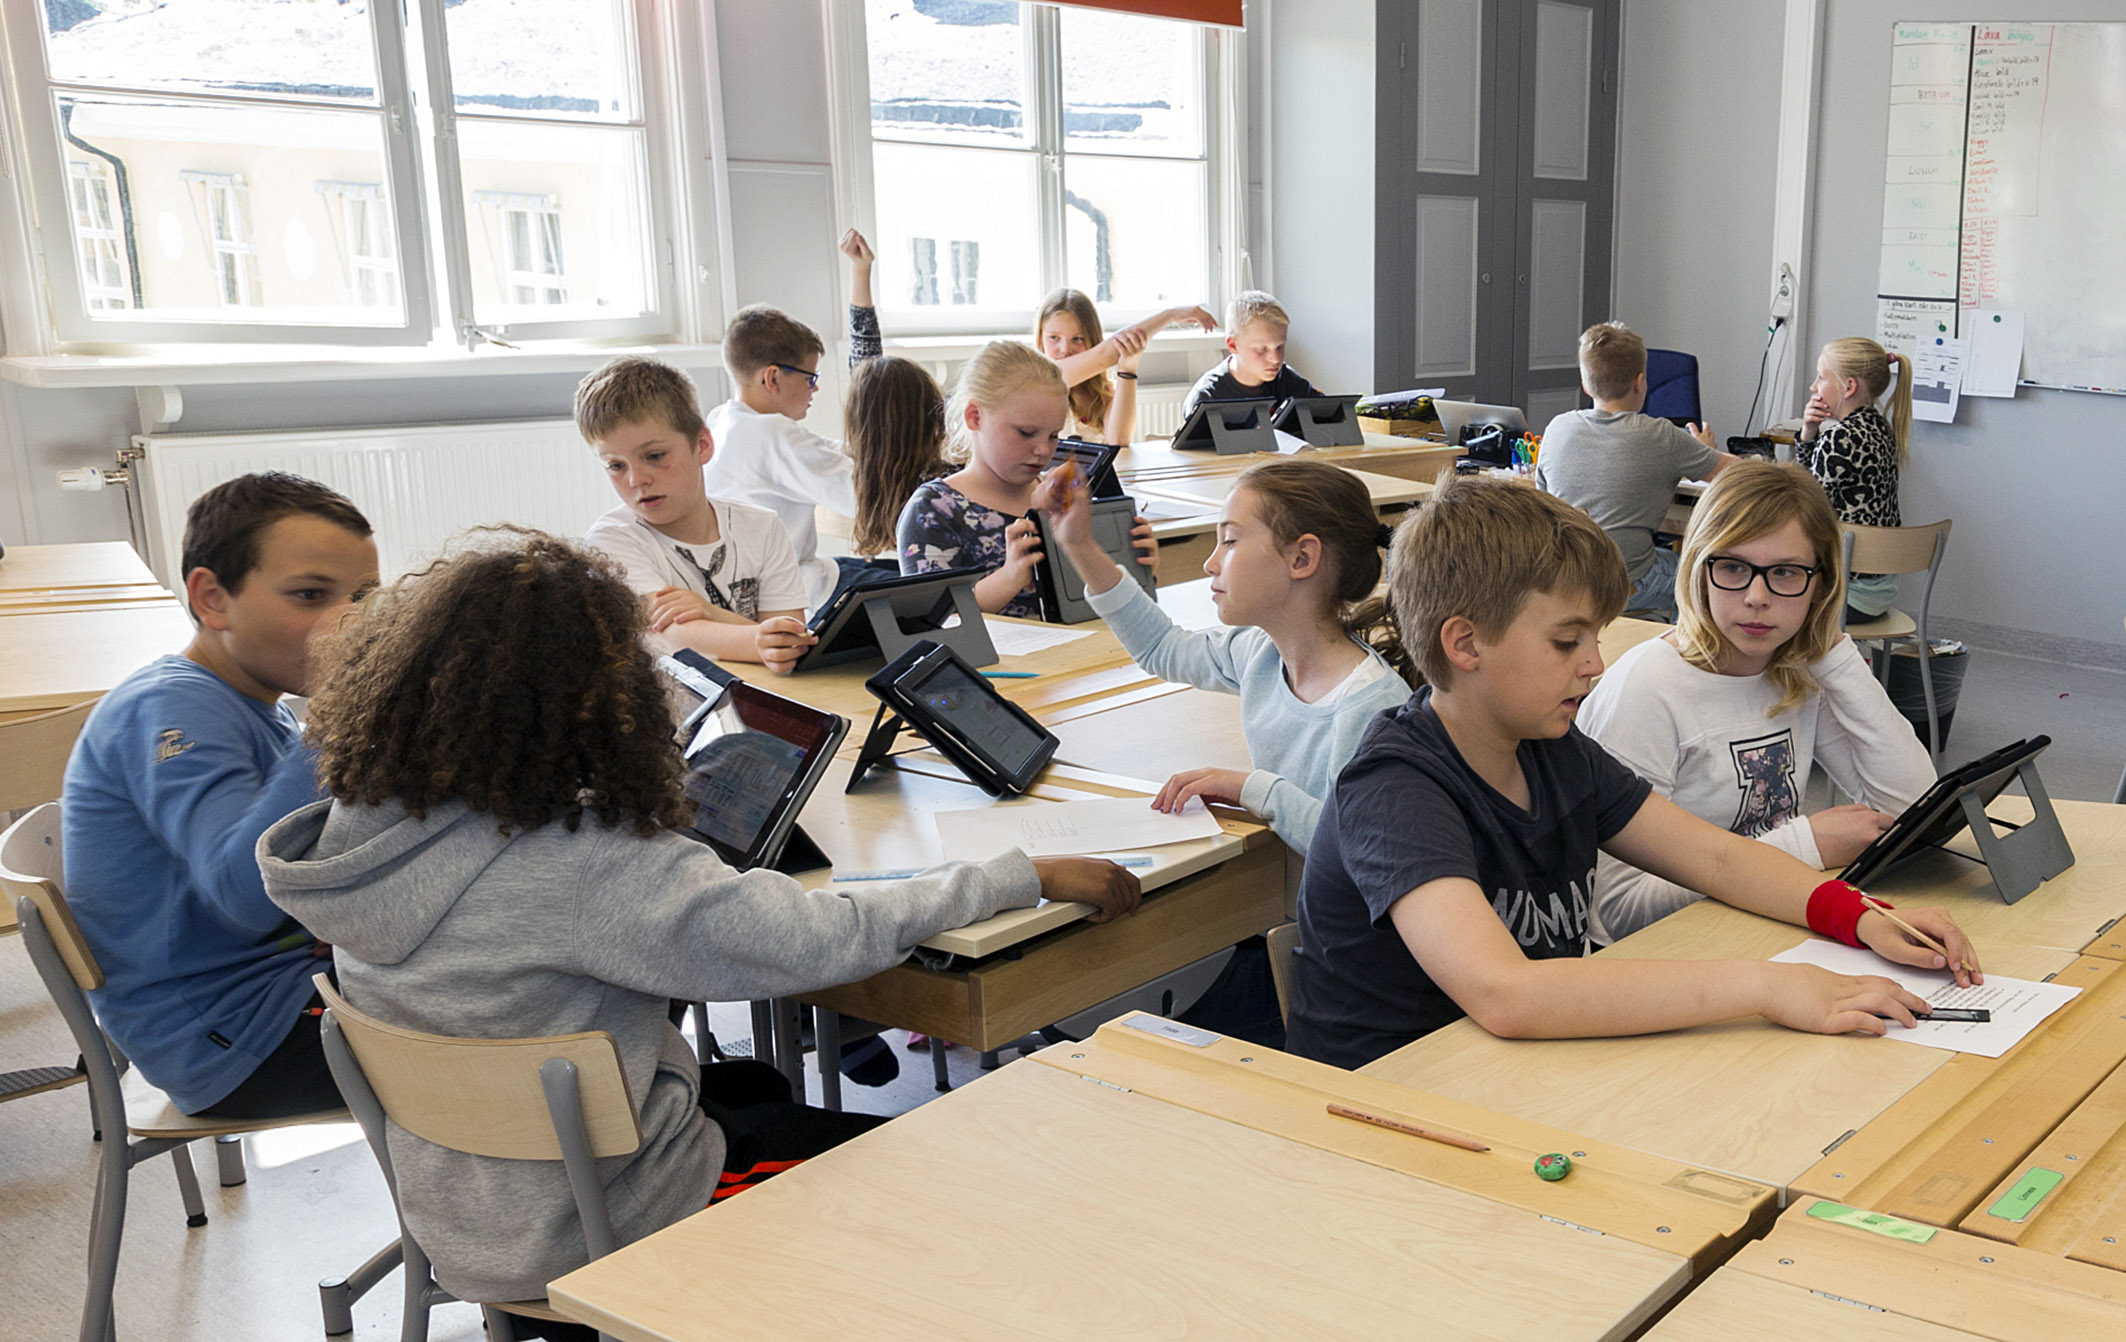 Problemet med buller i klassrummet har ökat. En orsak är att skolarbetet på senare år ofta sker i mindre grupper i klassrummet, vilket ger mer kringljud. Barnen på bilden har inte ingått i undersökningen.